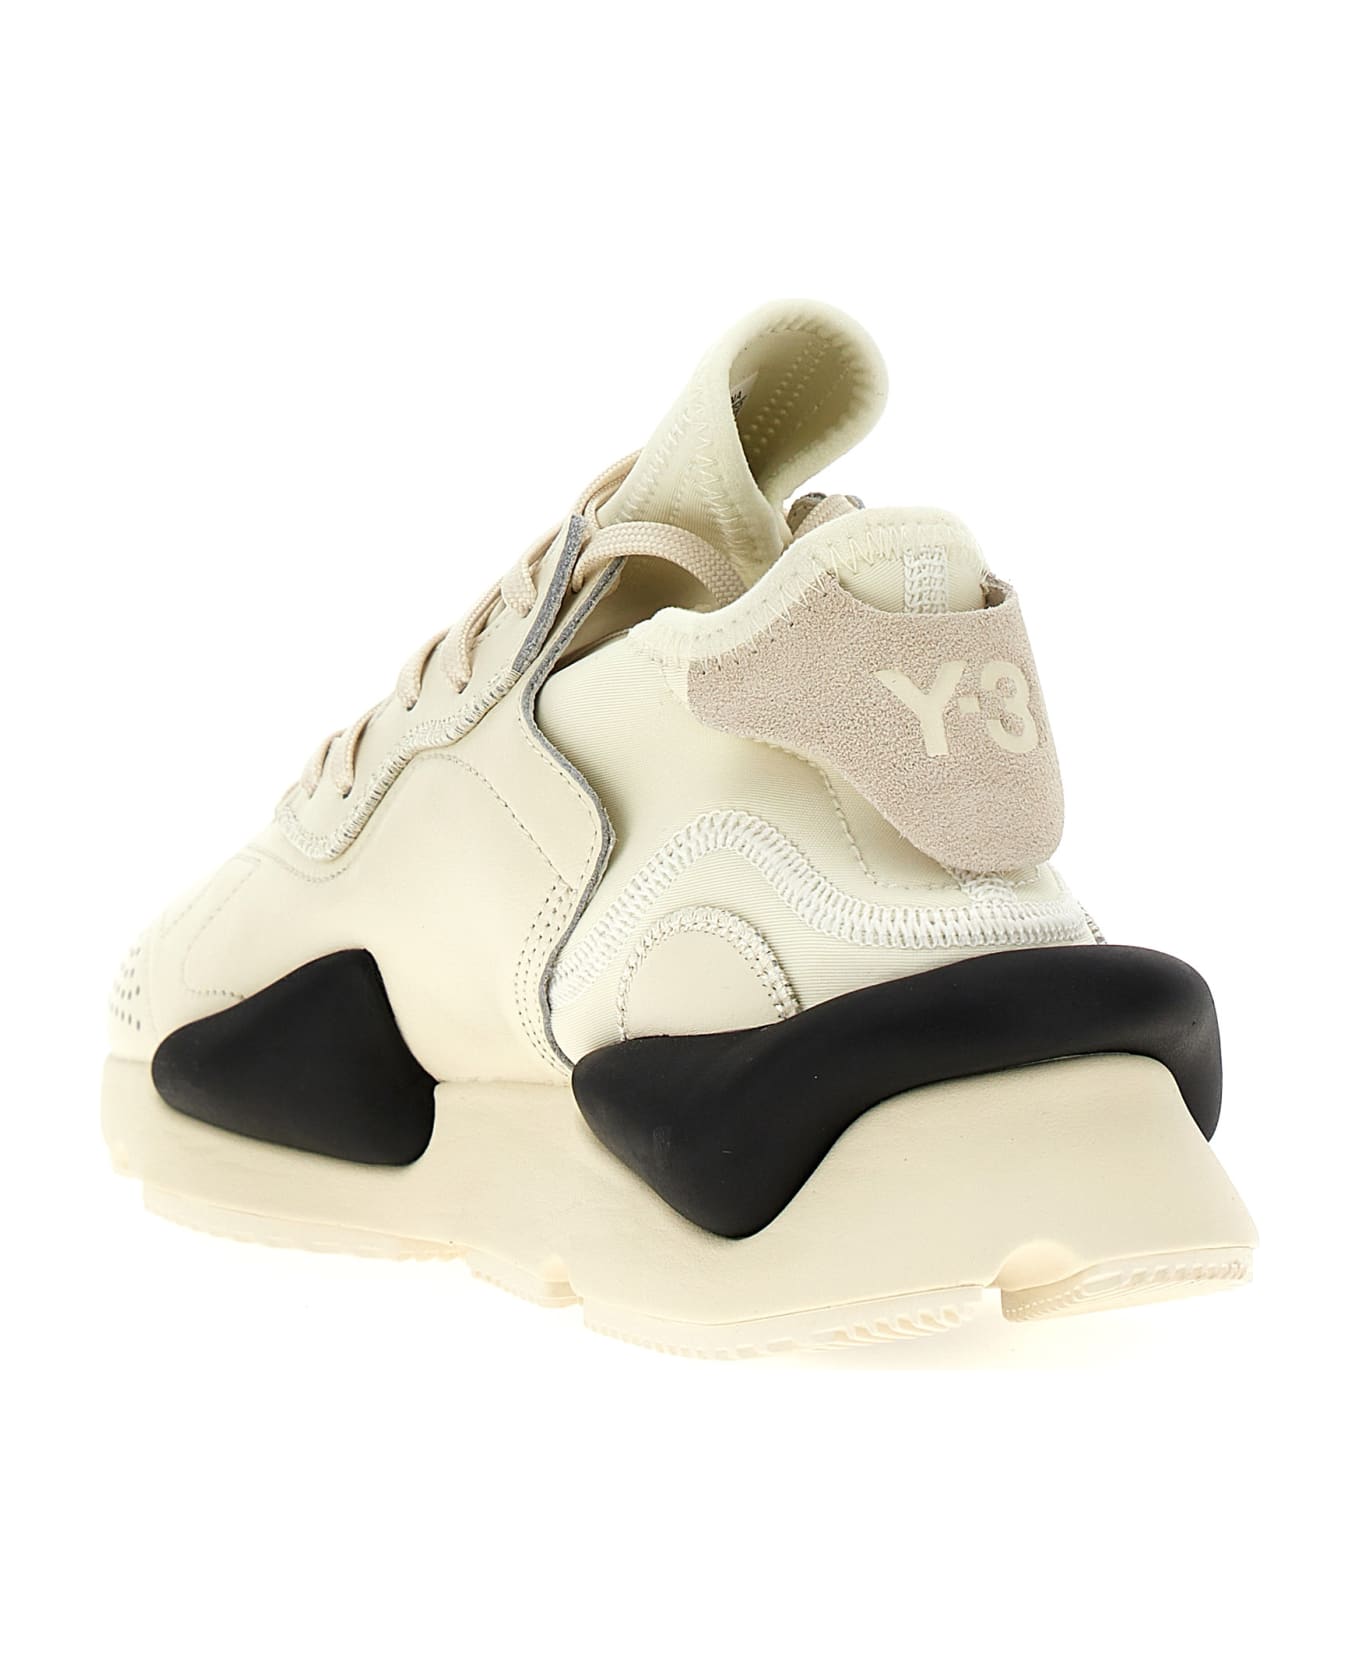 Y-3 'kaiwa' Sneakers - White